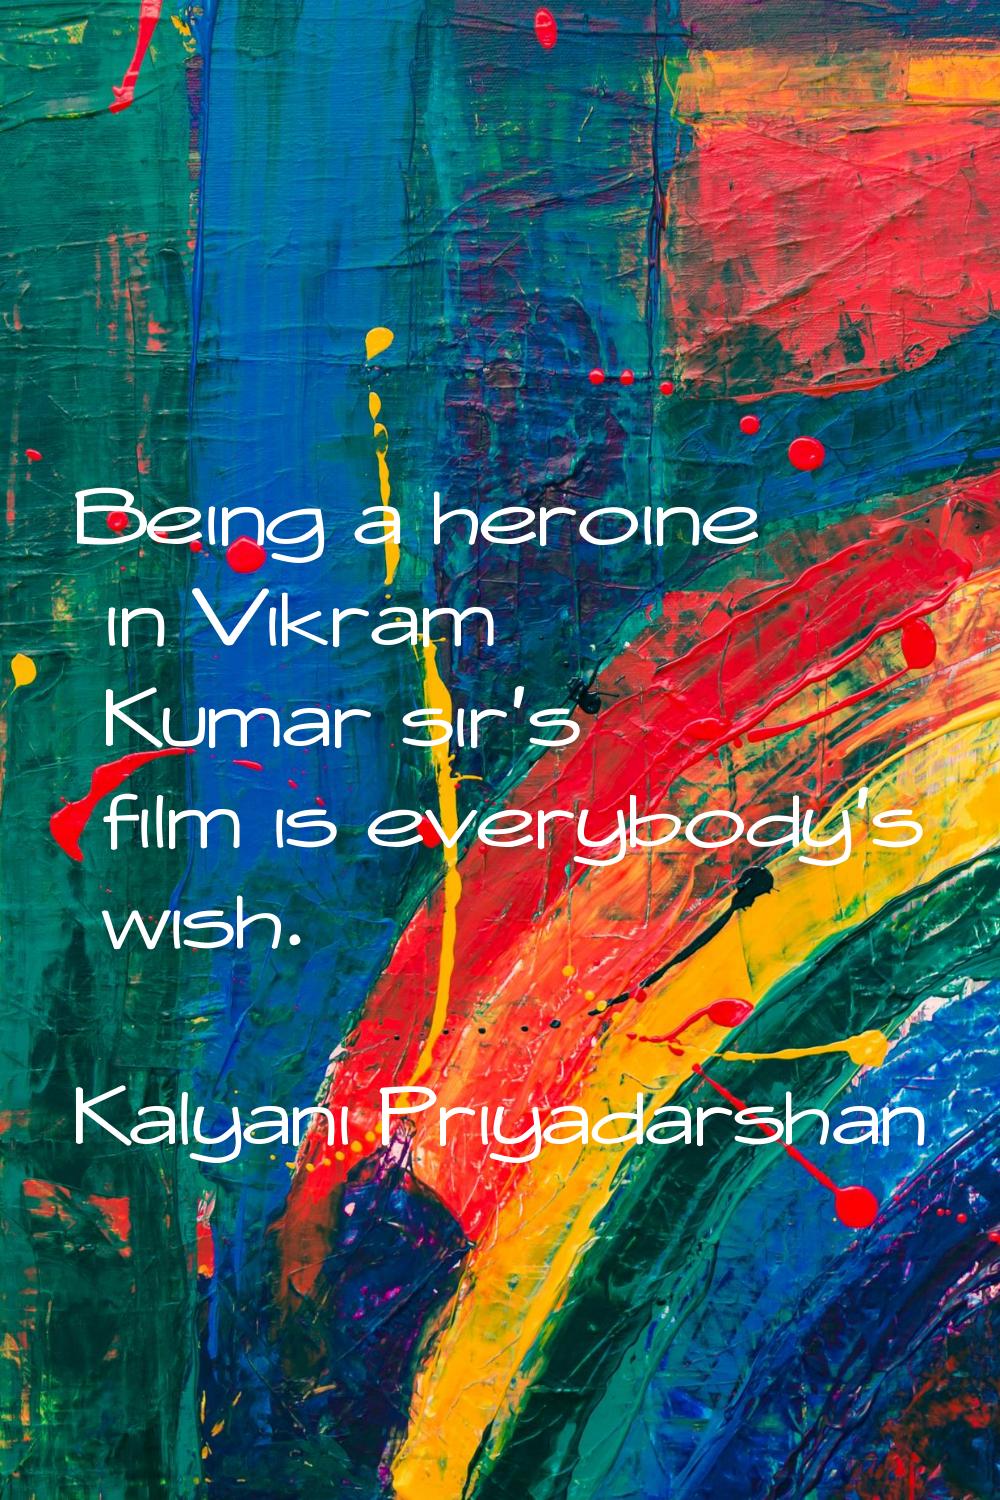 Being a heroine in Vikram Kumar sir's film is everybody's wish.